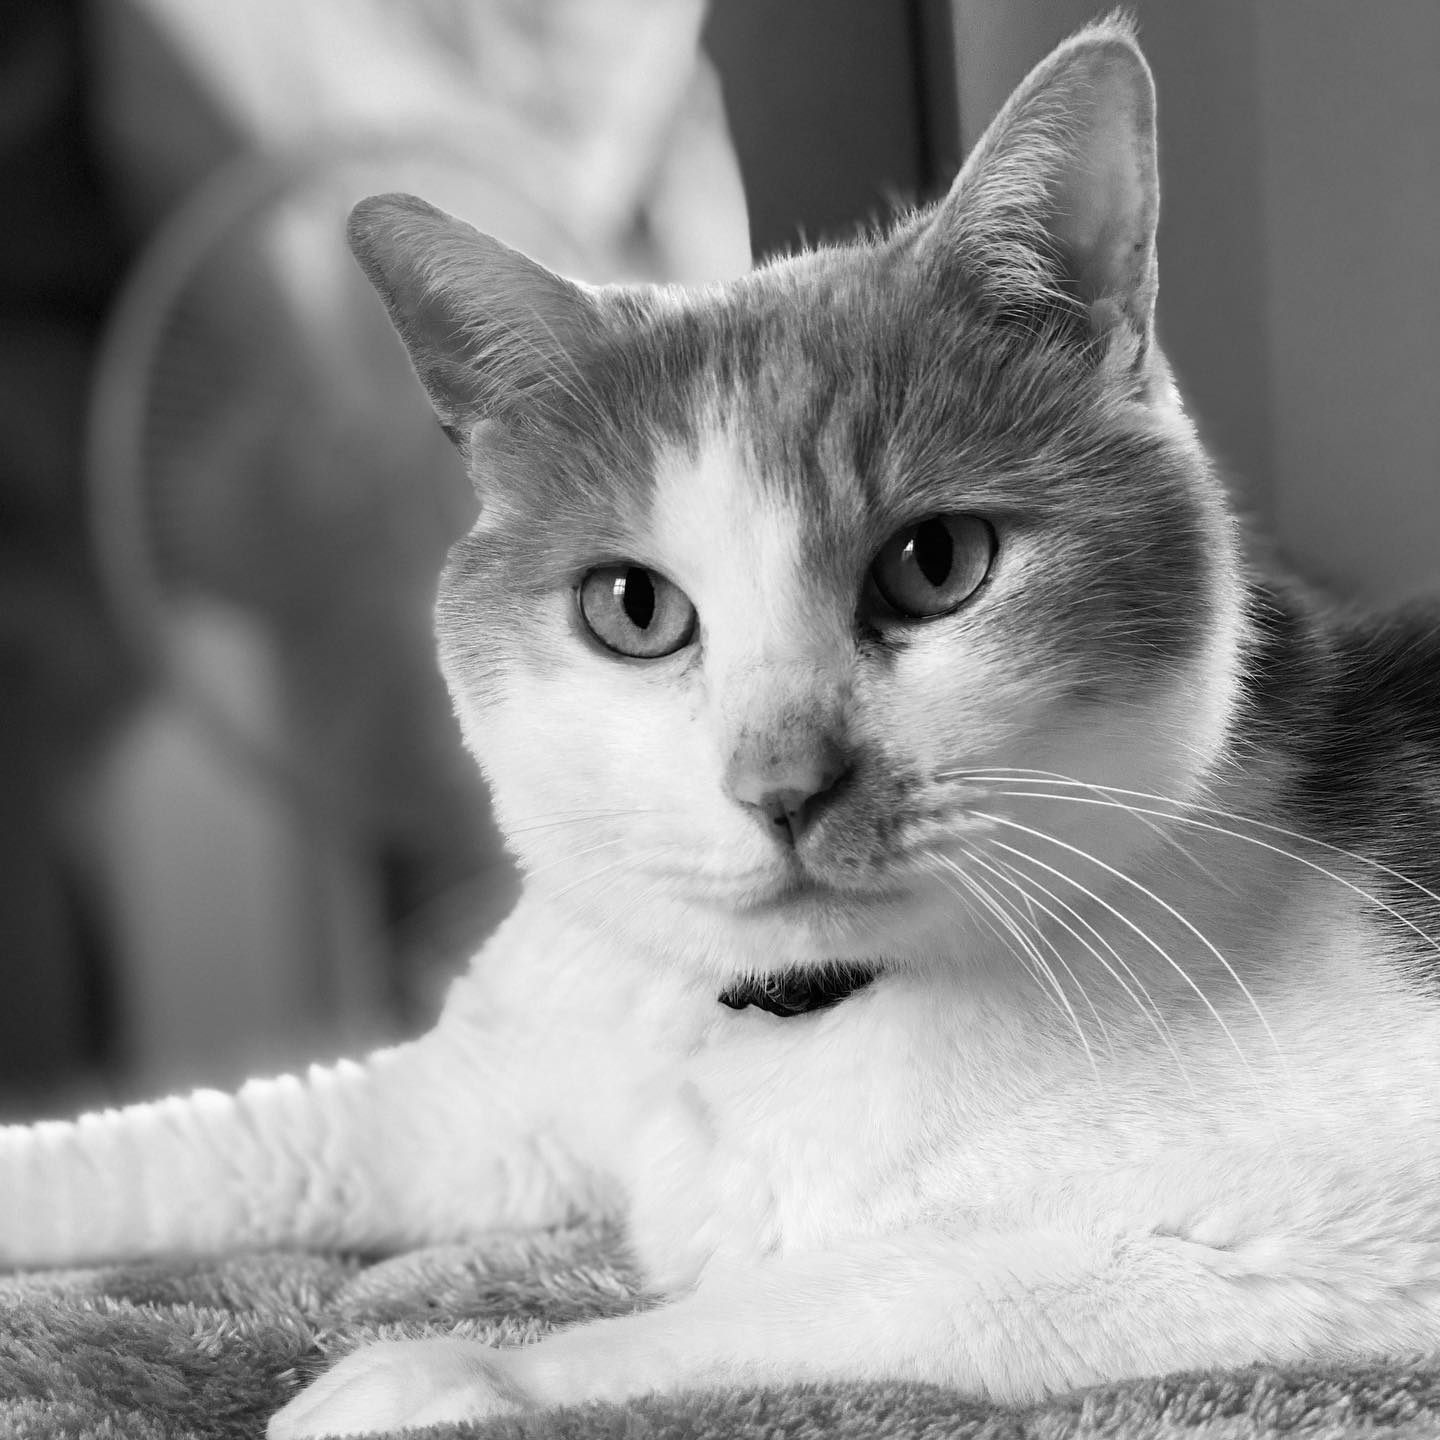 少し前の写真。凛々しい猫さん。(iPhone 11 Pro Max ポートレート)